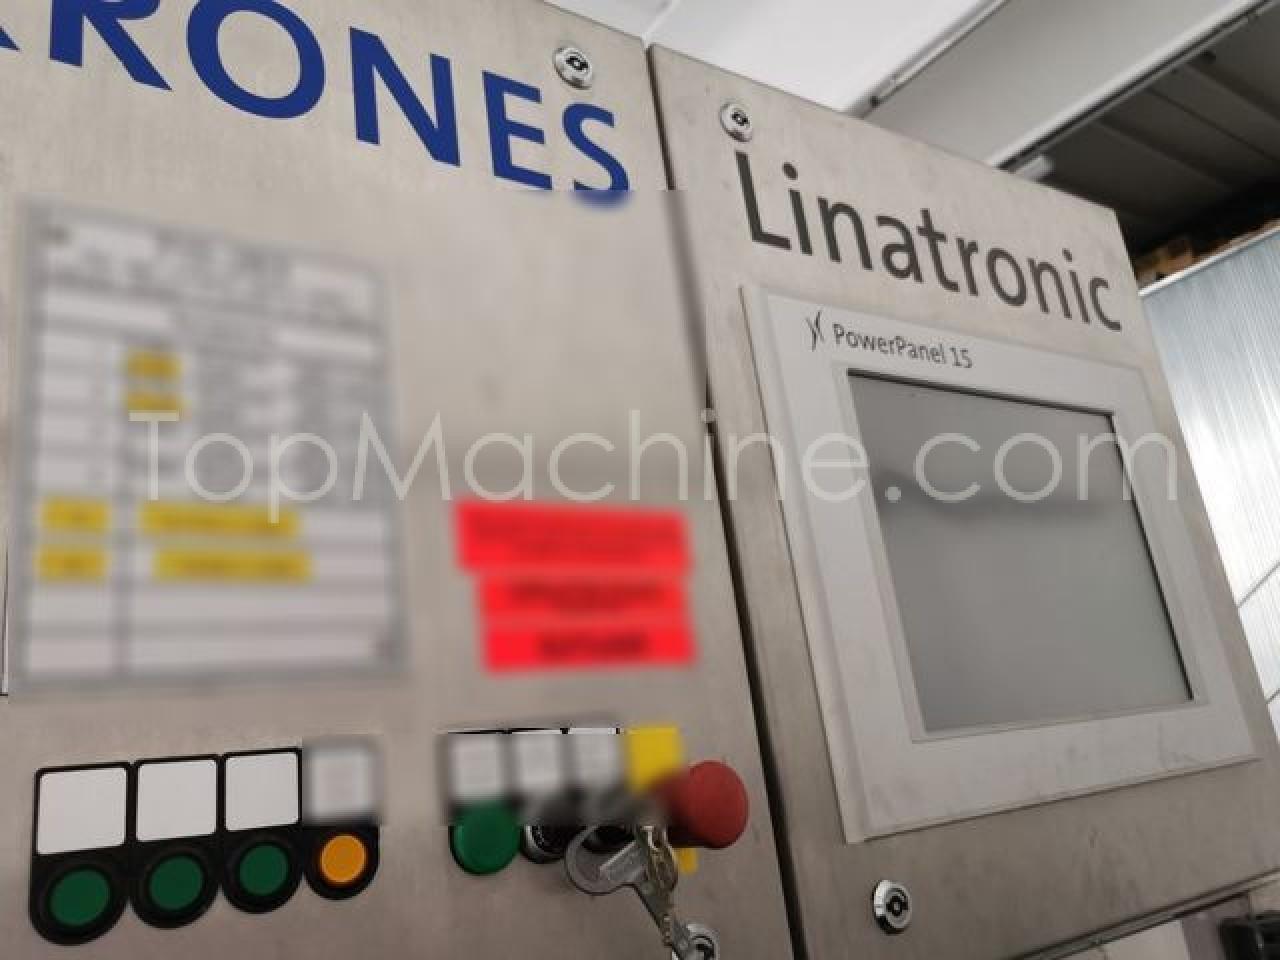 Used Krones Linatronic Bebidas e Líquidos Diversos